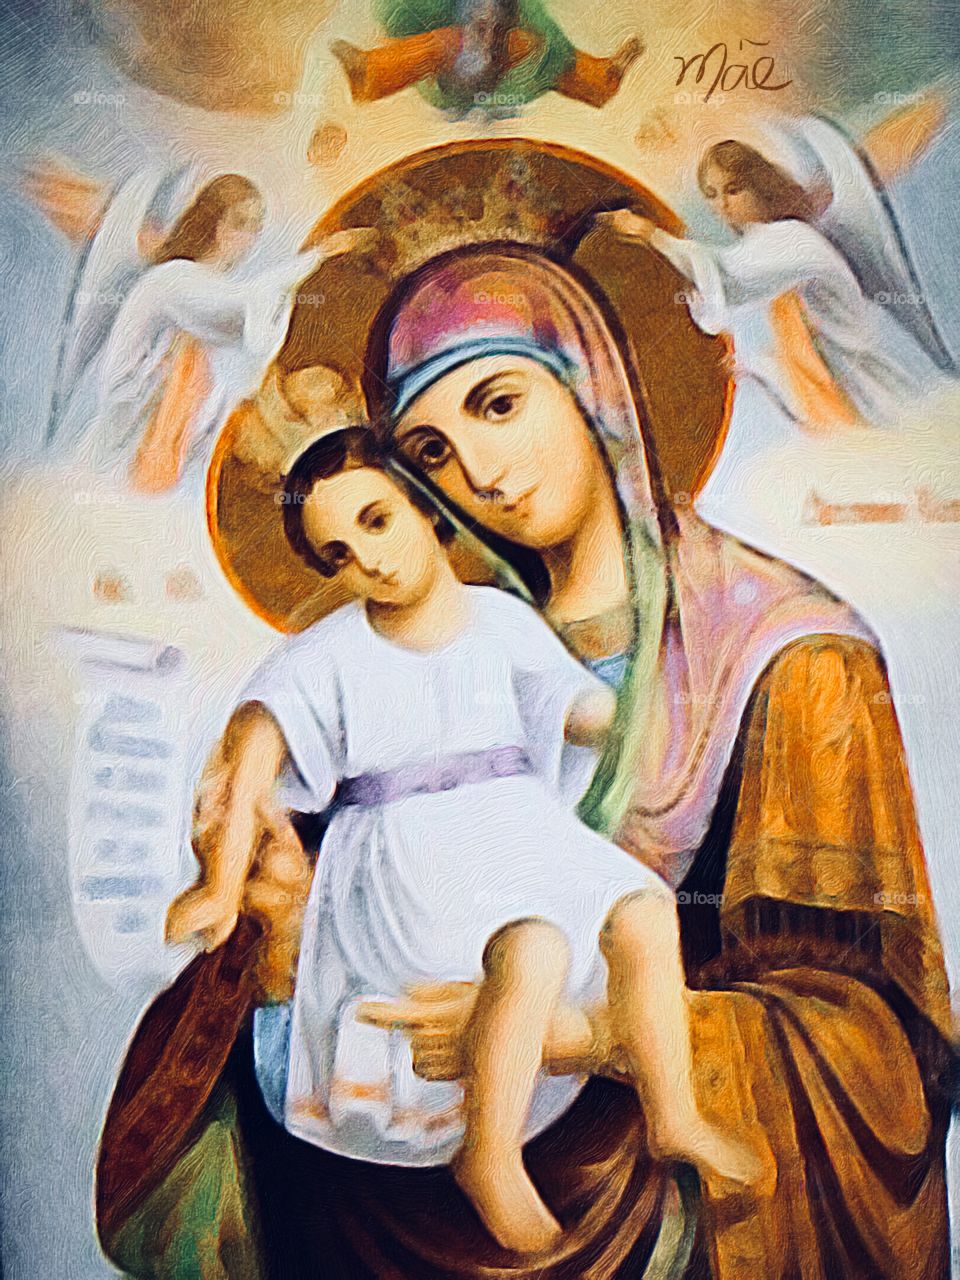 🙏🏻Correndo e Meditando:
"Ó #Maria #MãeDeJesus, rogai por nós, ó #NossaSenhora. #Amém."
⛪
#Fé #Santidade #Catolicismo #Jesus #Cristo #PorUmMundoDePaz #Peace #Tolerância #Fraternidade